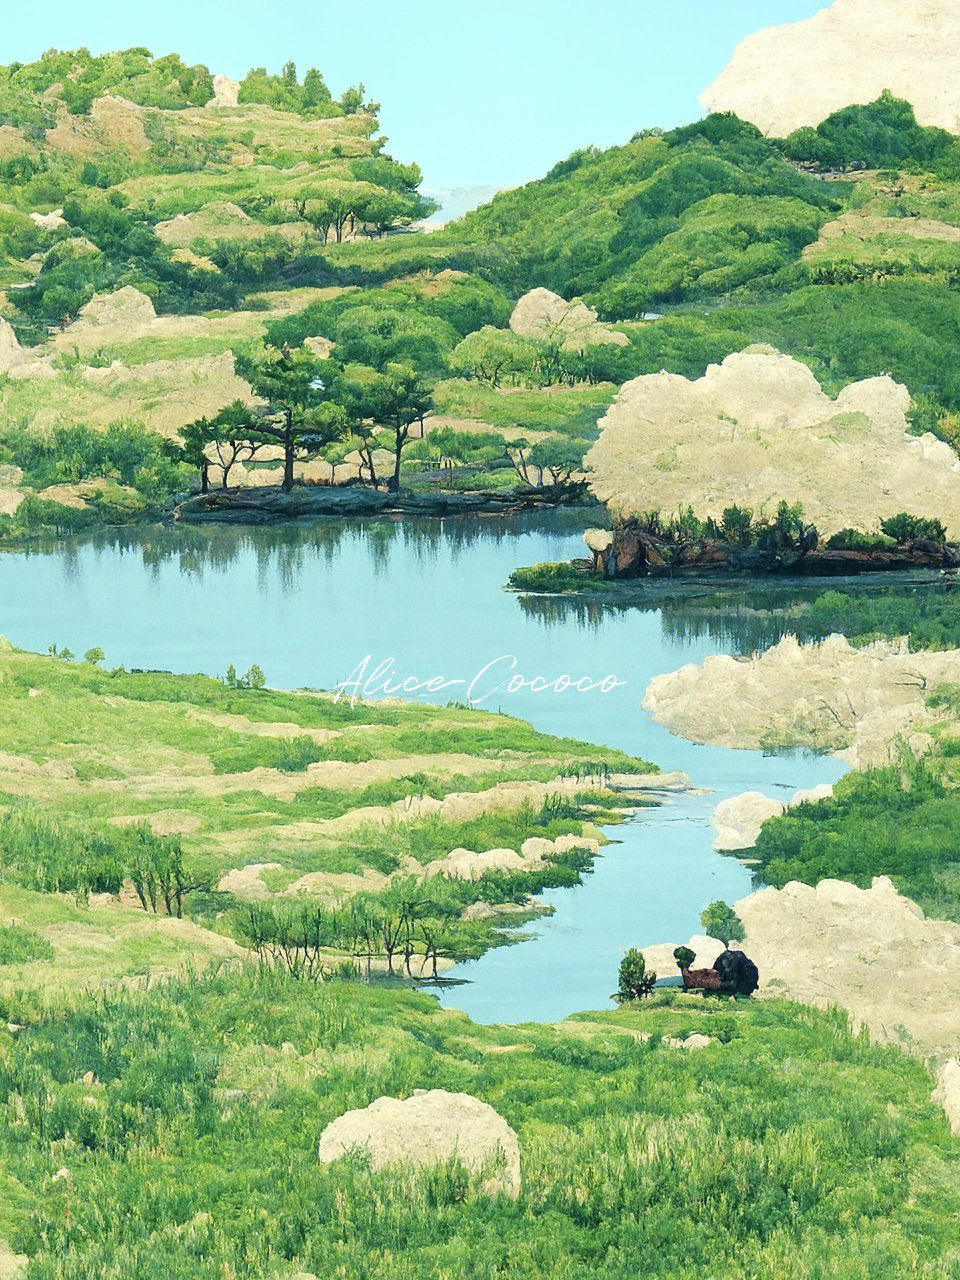 日本画师鳄梨6图集图片